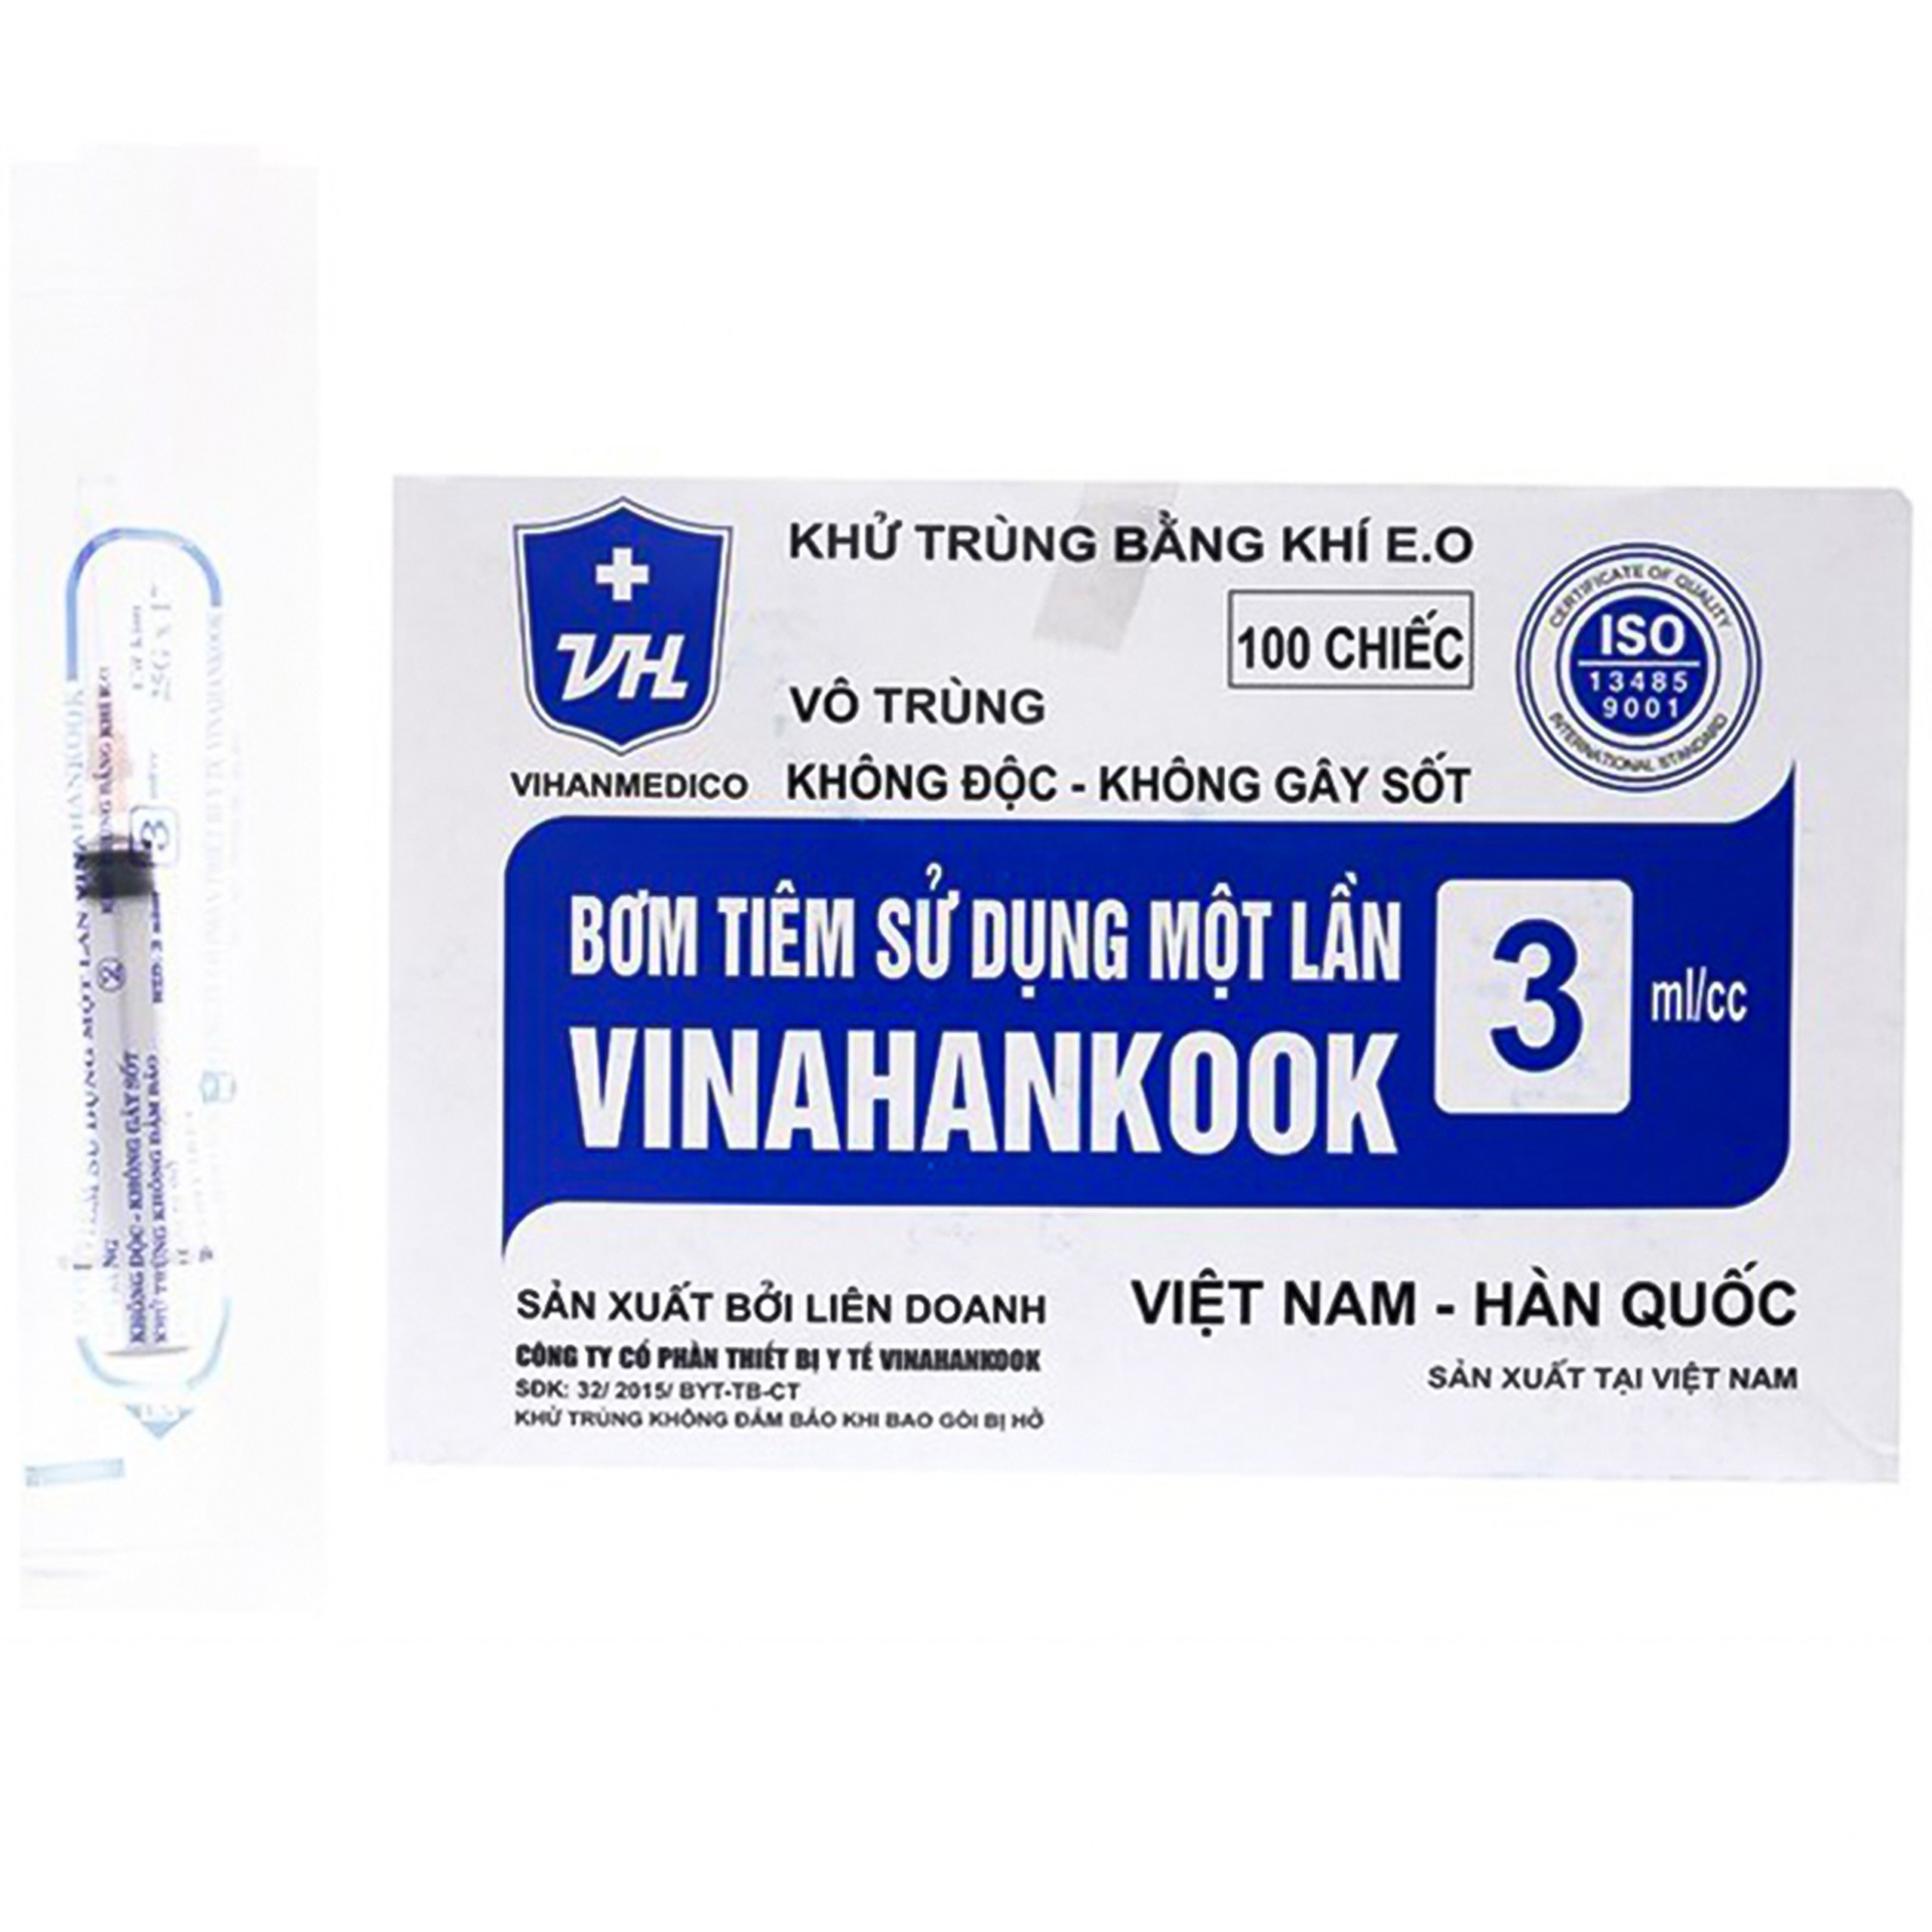 Bơm tiêm sử dụng một lần Vinahankook 3ml/cc được khử trùng bằng khí E.O (23g - 100 cái)